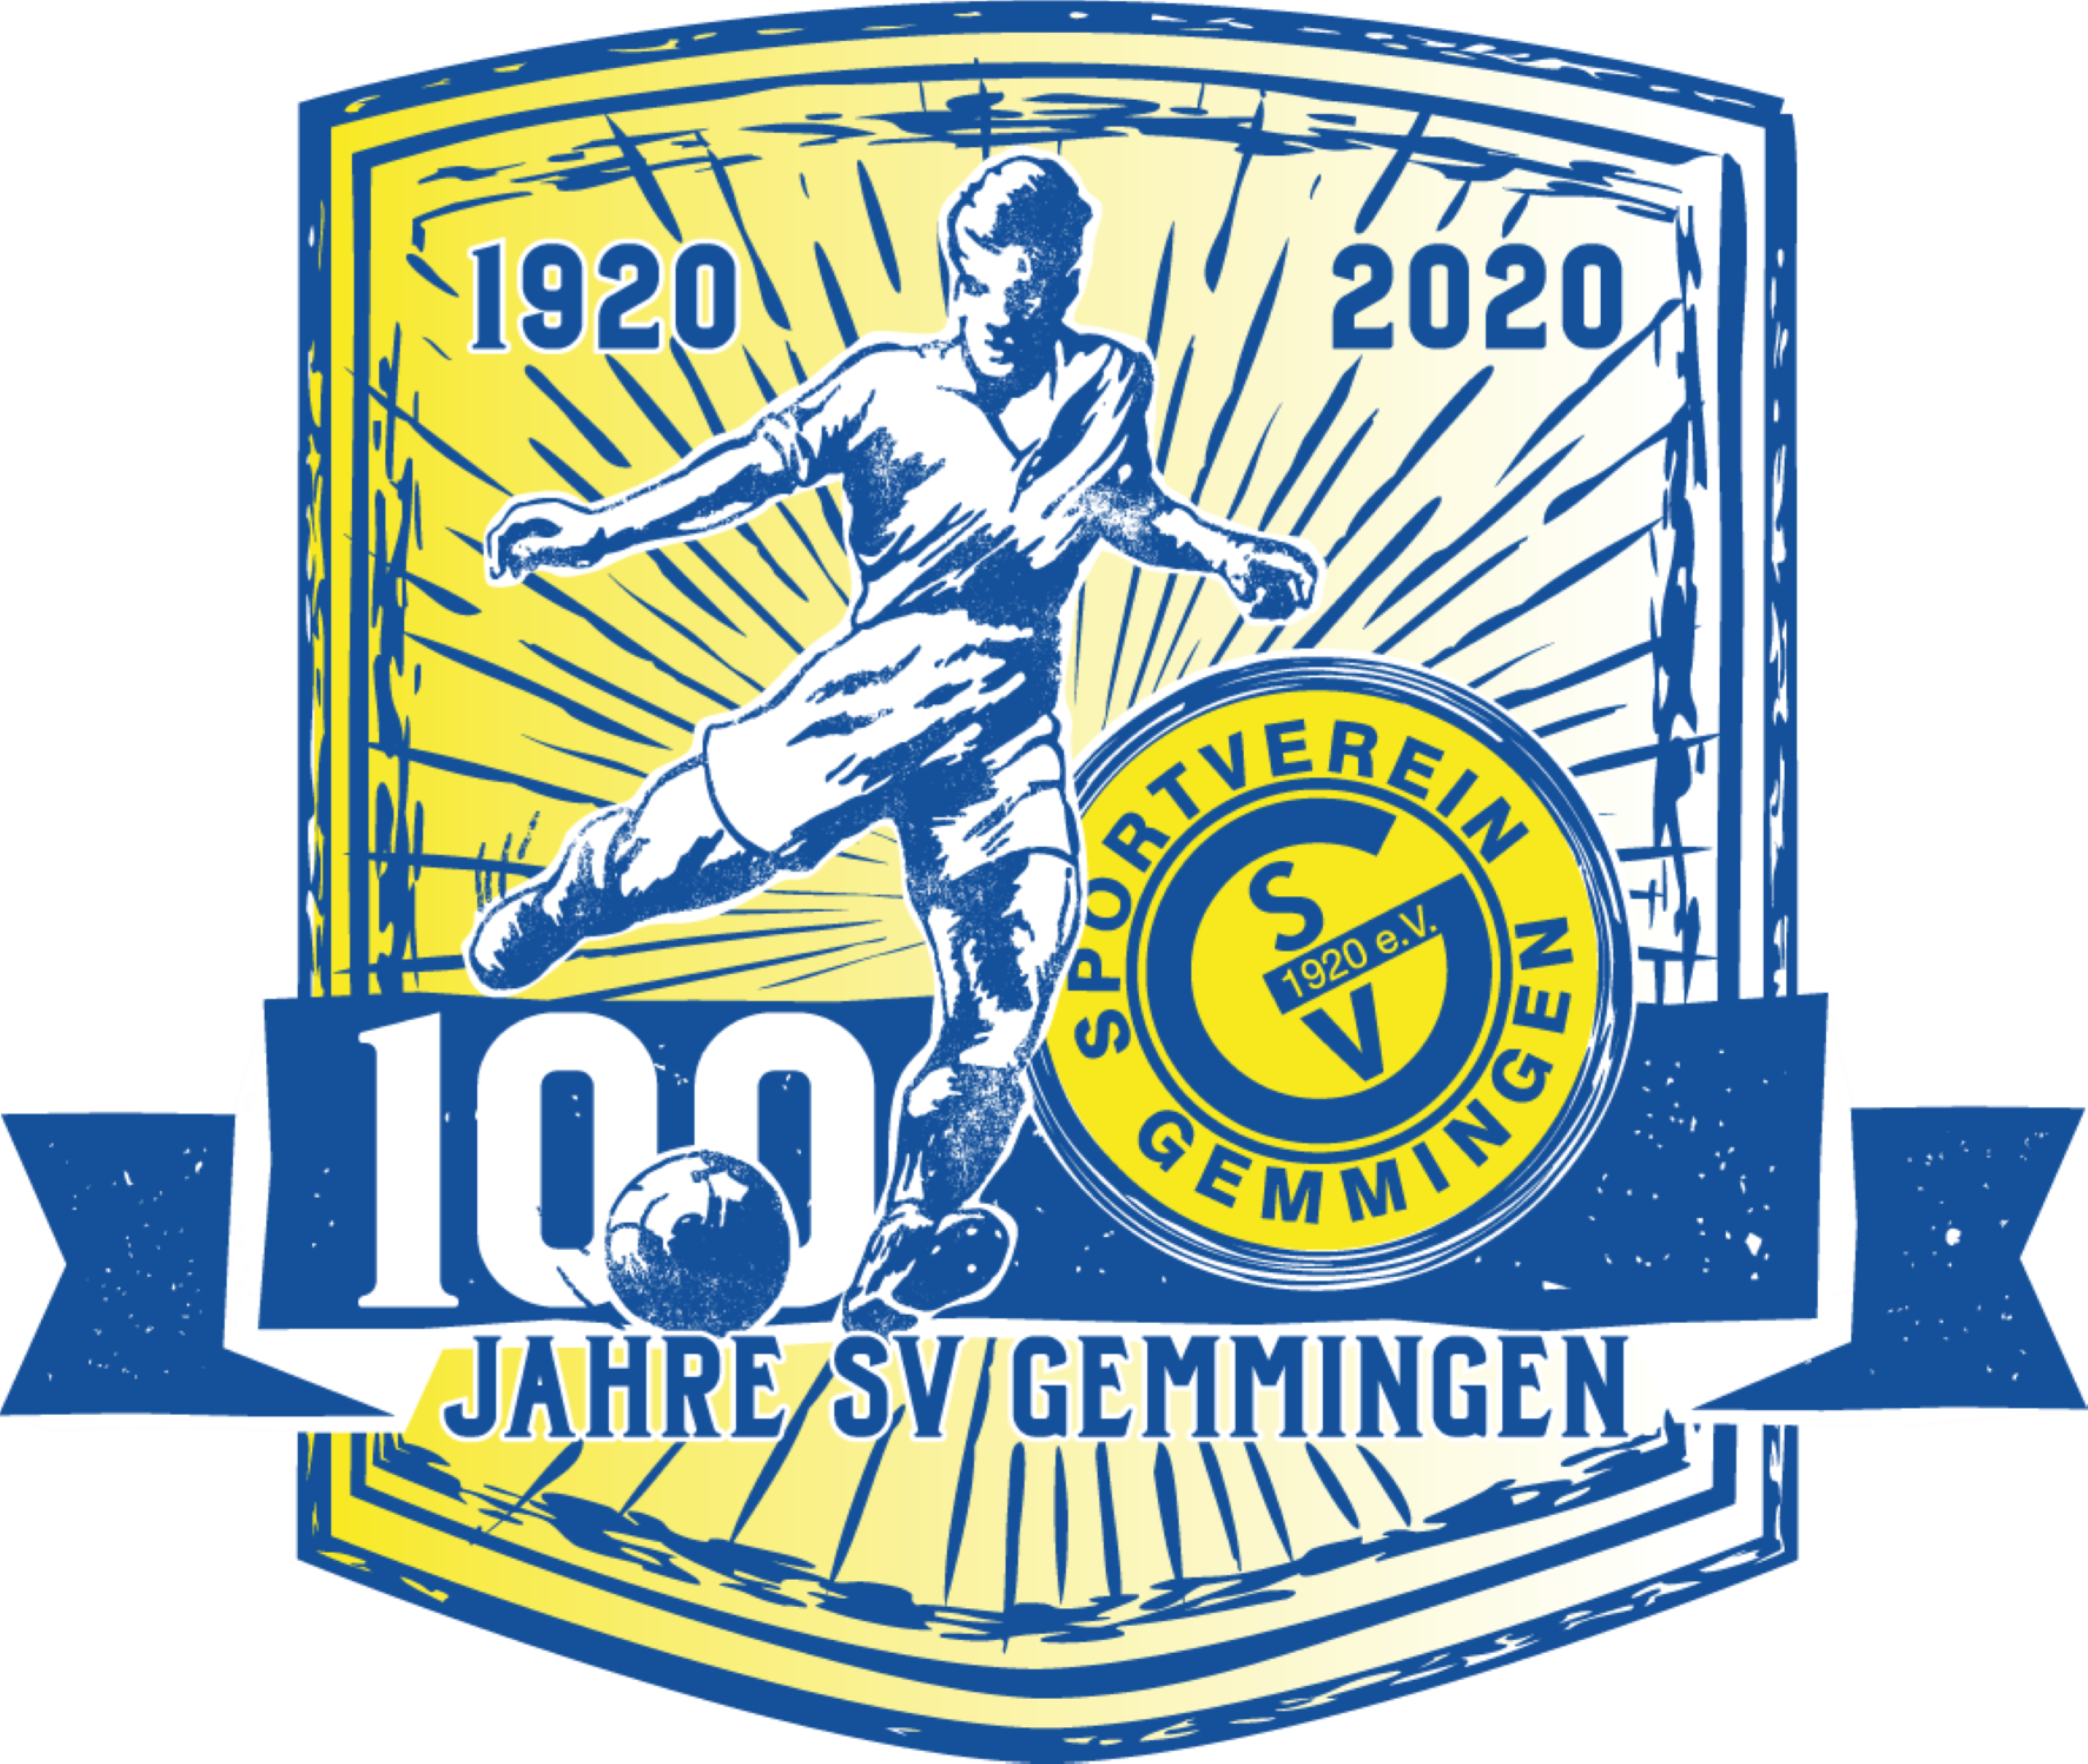 SV Gemmingen Logo